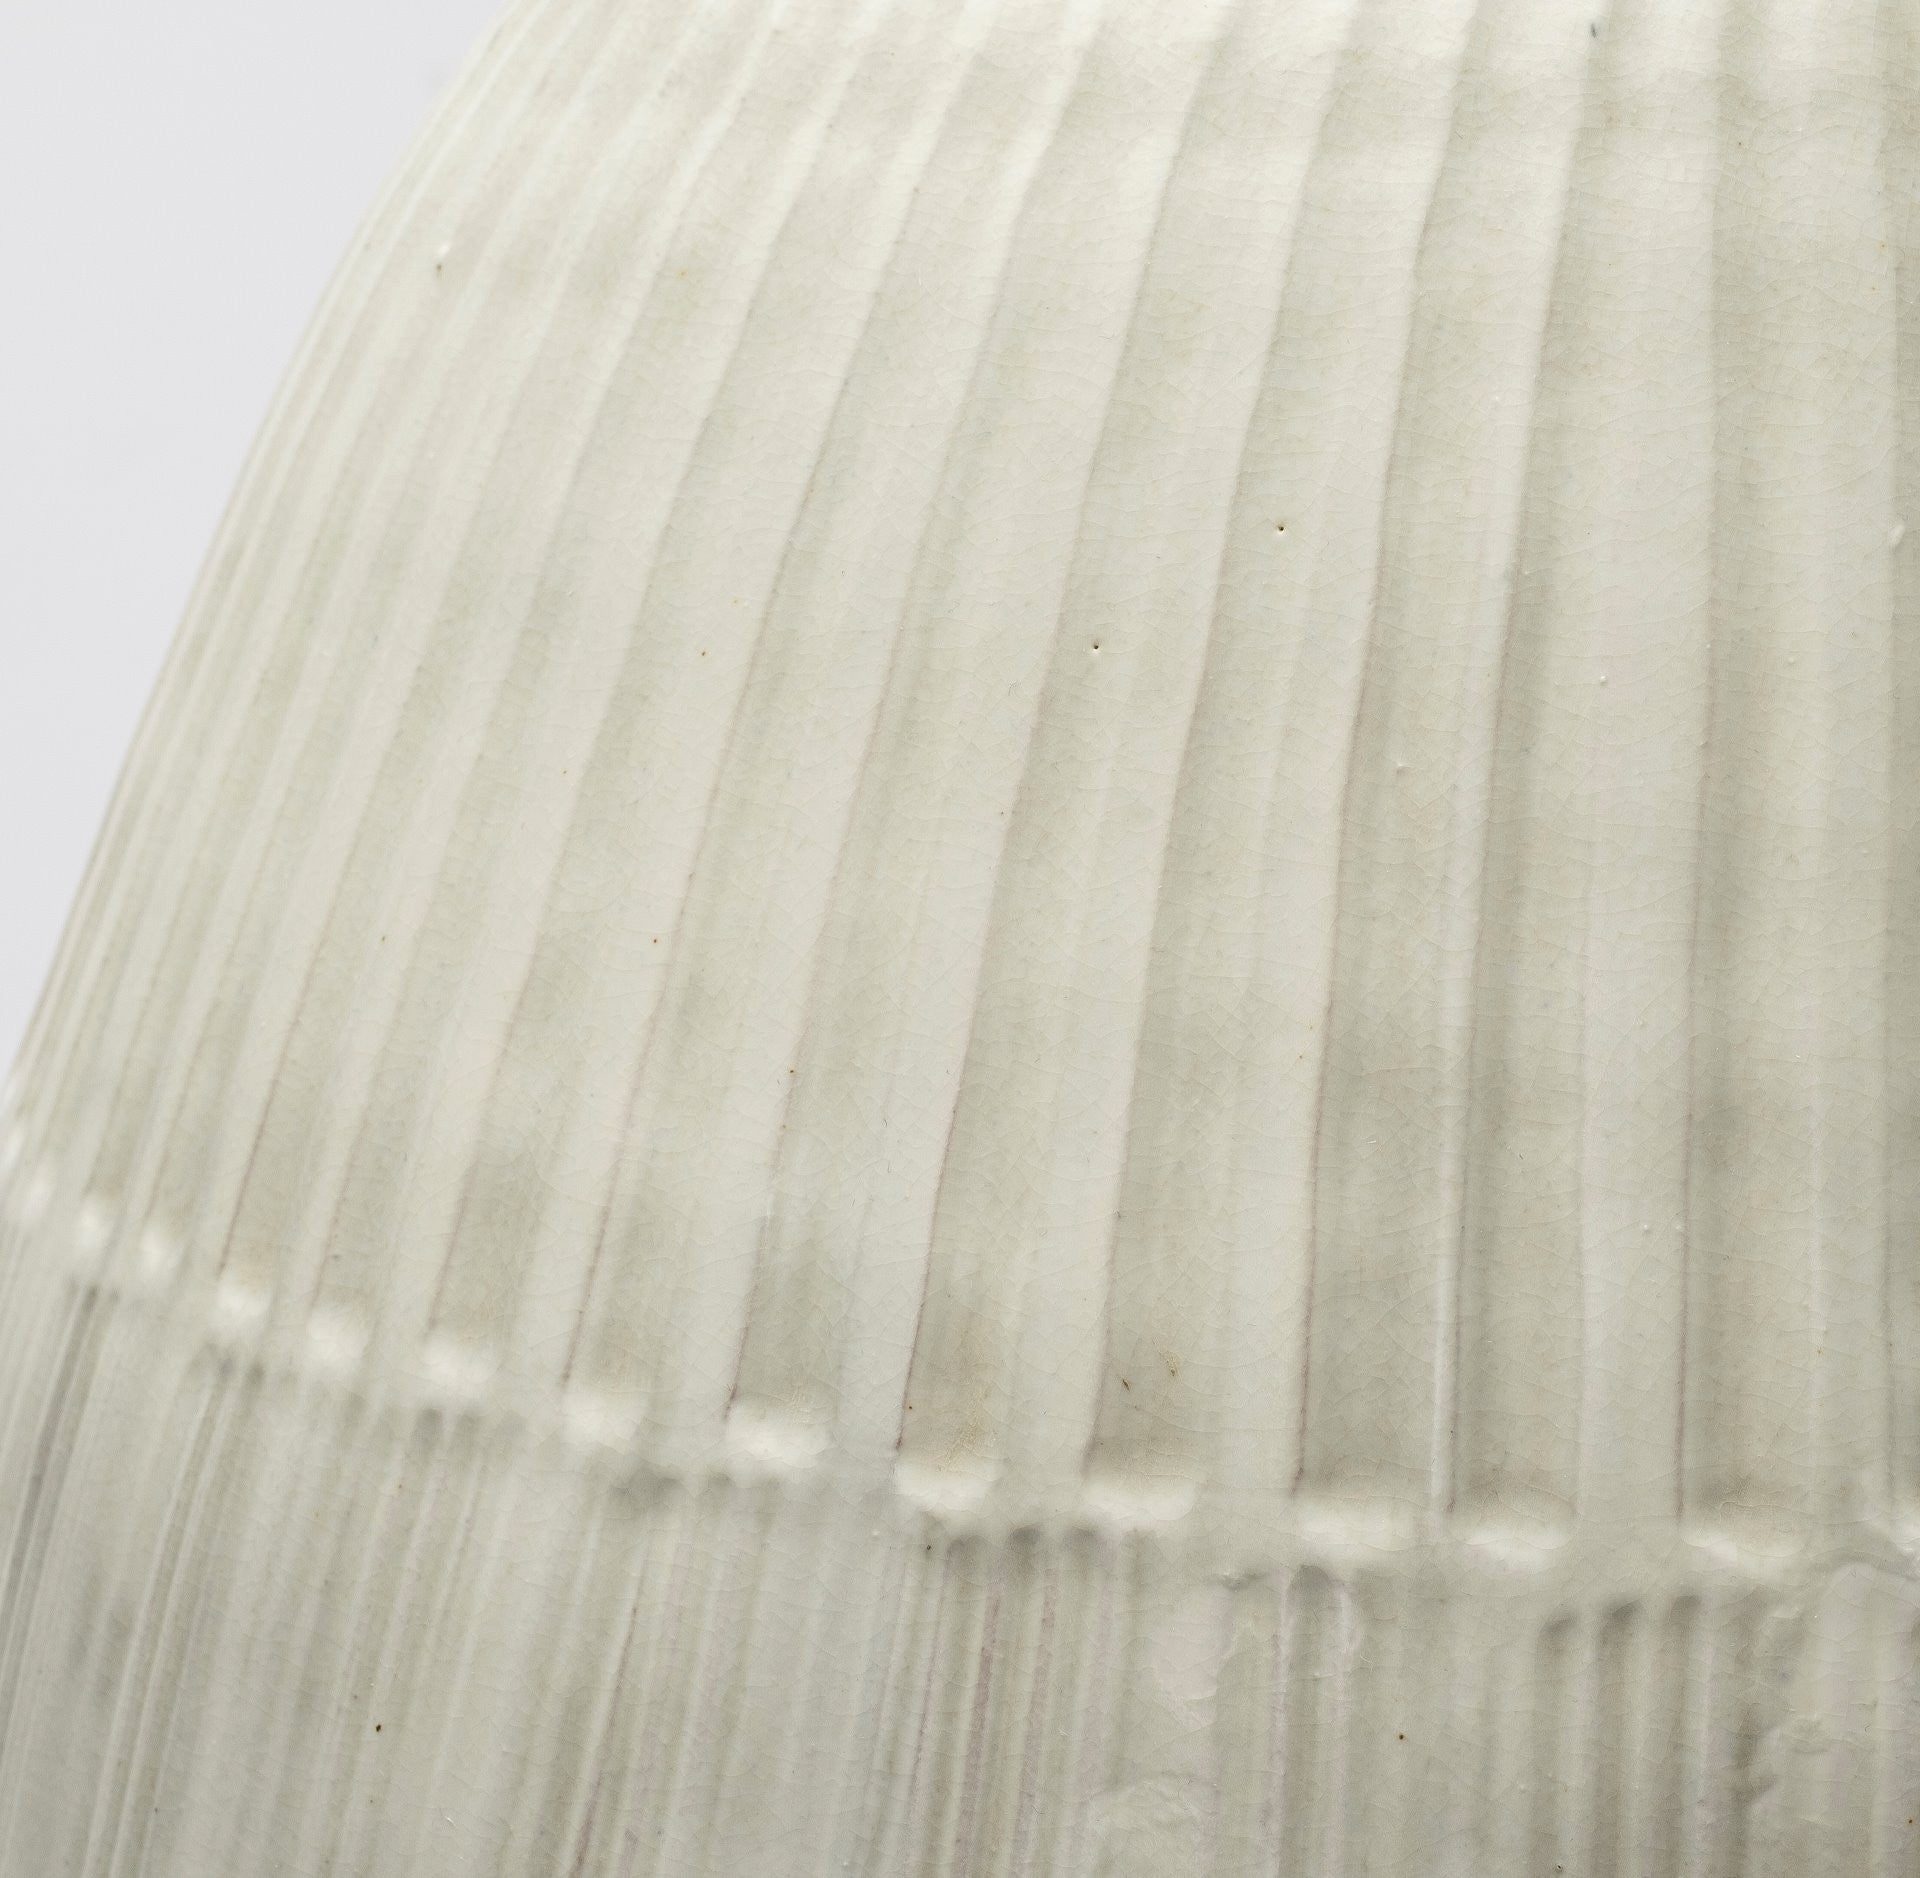 White Embossed Stripes Ceramic Vase